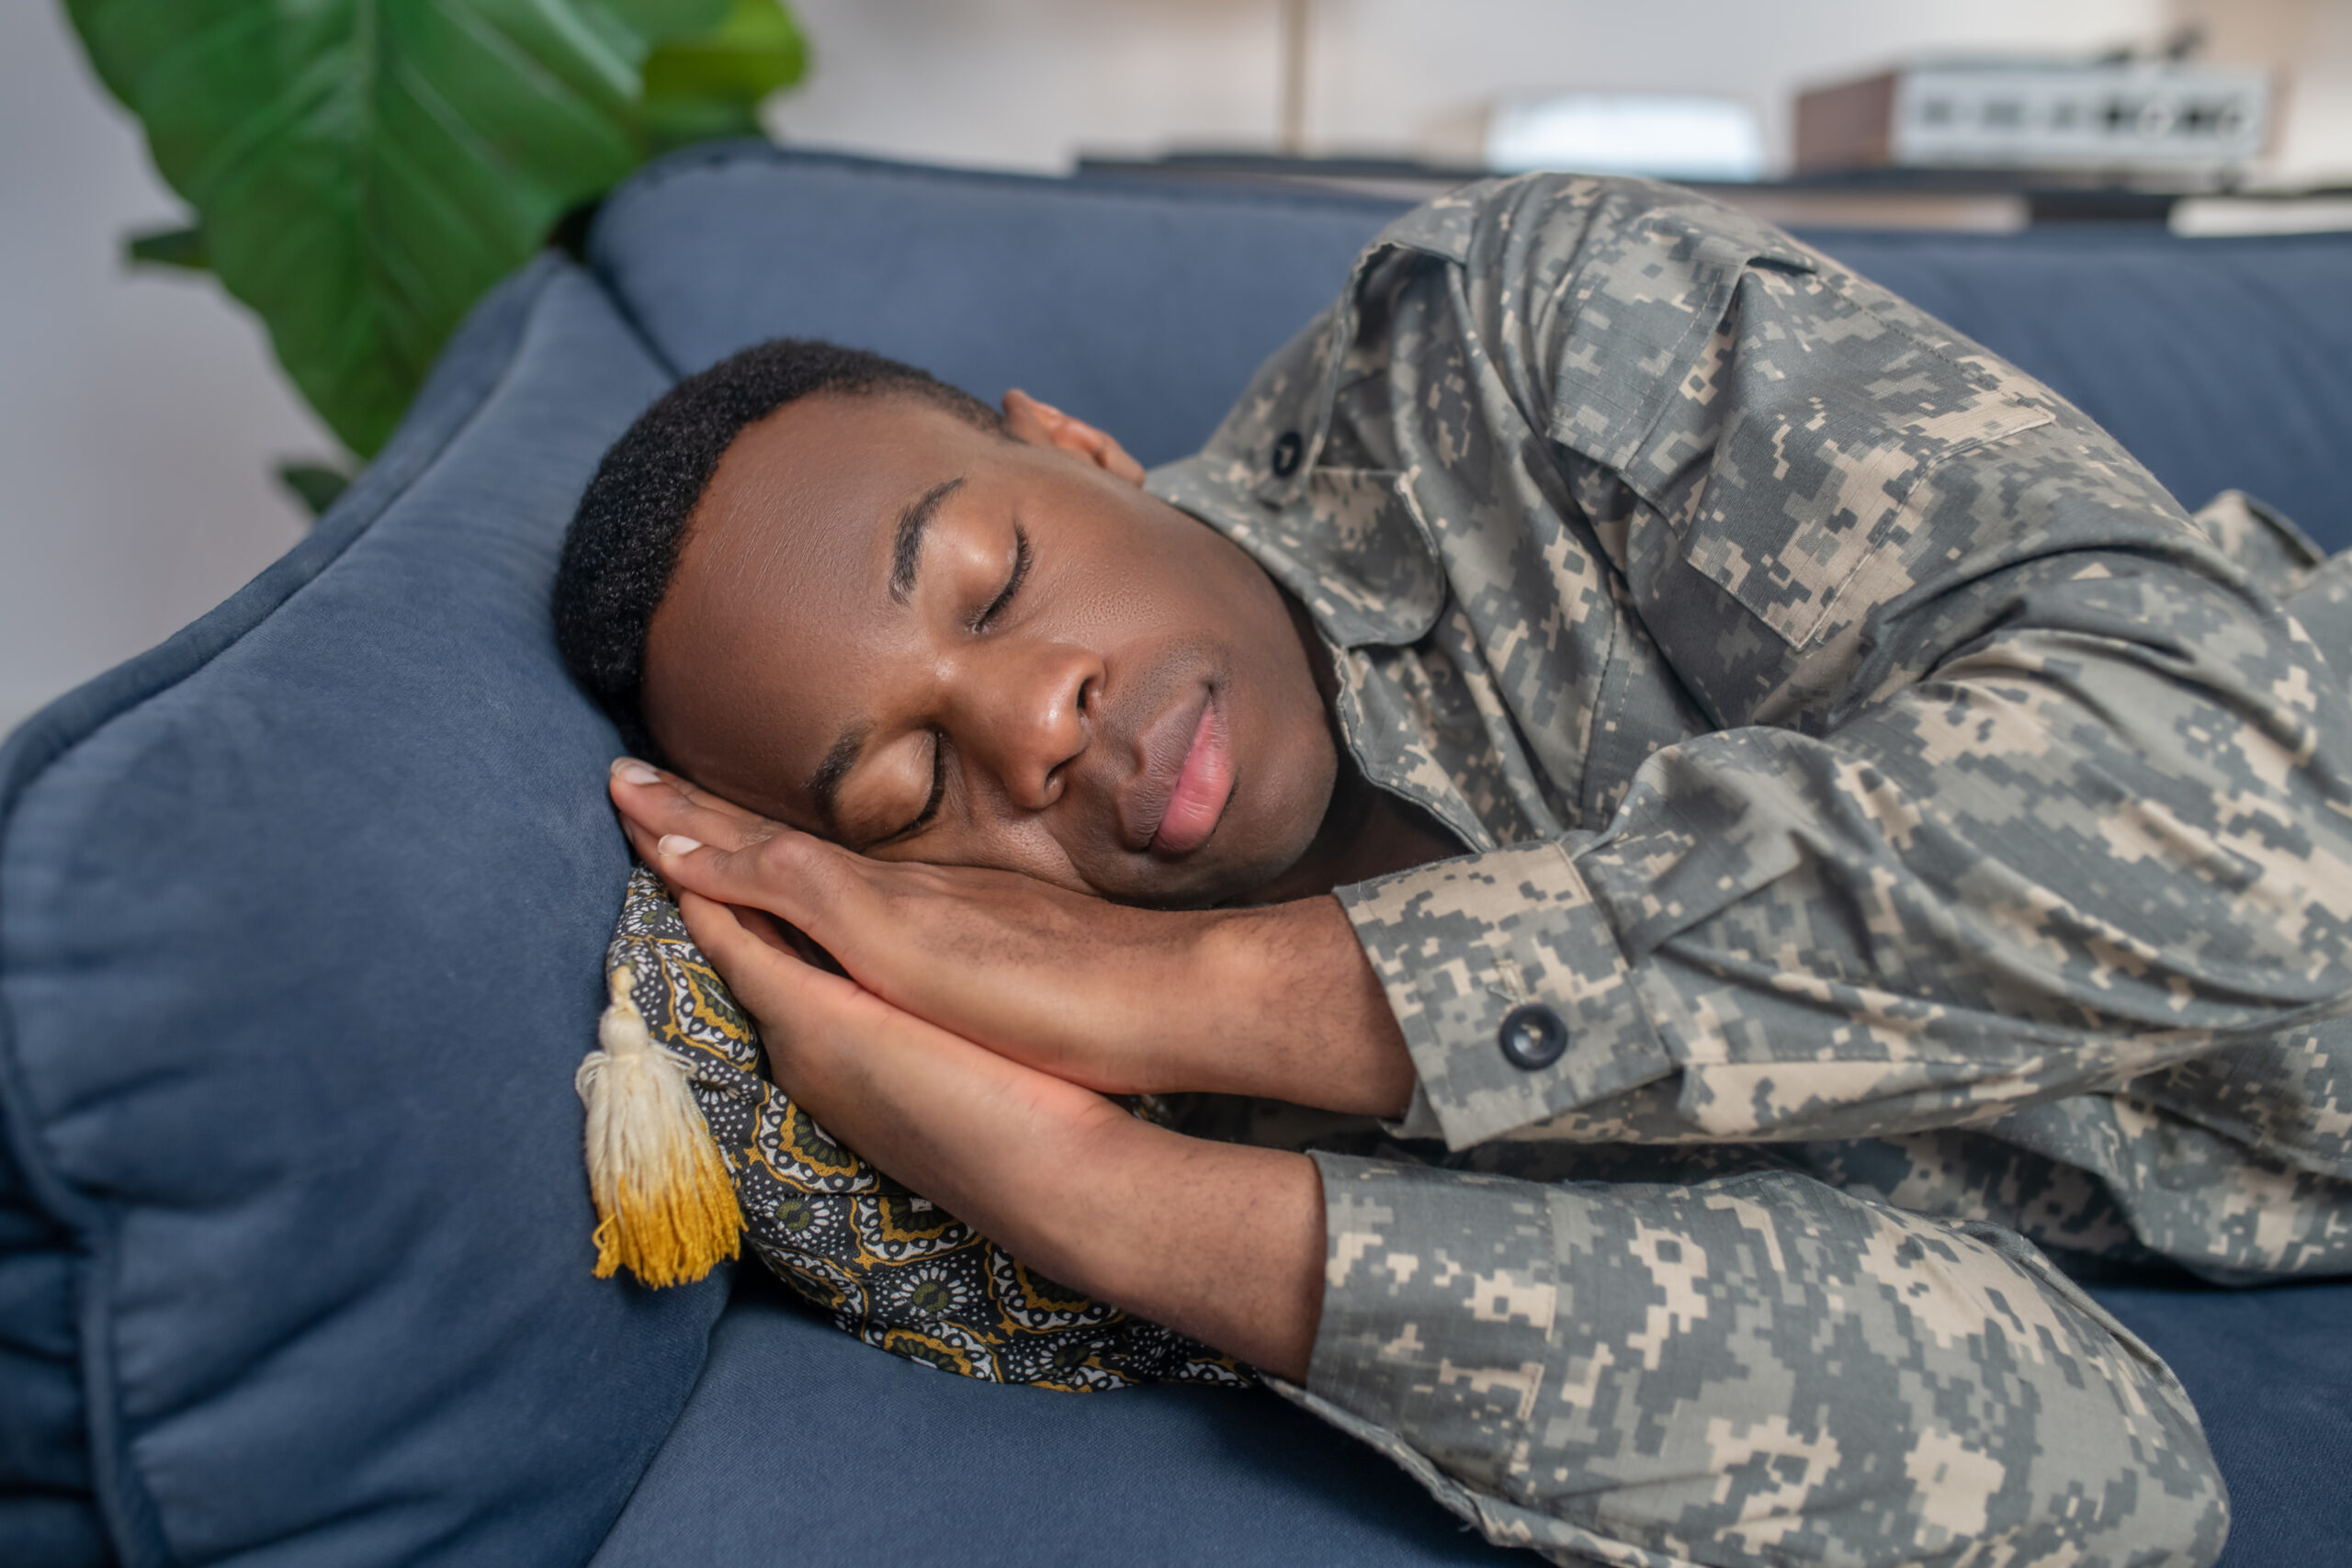 Conciliare il sonno in pochi minuti? Con una tecnica militare si può fare Non è una formula magica ma se riusciamo a padroneggiare una tecnica specifica - quella di cui stiamo per parlare - riusciremo ad addormentarci sereni e a dormire meglio così da essere in piena forma per il giorno dopo. Vediamo di che si tratta Arriva dai militari la tecnica per coadiuvare il sonno in due minuti Facciamo bene attenzione: una volta a letto, la schiena aderente al materasso, e ci concentriamo sul nostro respiro. Abbiamo bisogno di inspirare e espirare, più prosaicamente prendere aria ed espellerla, in maniera profonda. In questo modo si dà il via al rilassamento. E ognuno di noi sa bene di quanto ne abbia bisogno. Pensiamo bene ad ogni parte del nostro corpo con gli occhi chiusi: mascella, guance, bulbi oculari, braccia, gambe, dita delle mani e dei piedi. Facendo così scarichiamo lentamente la tensione accumulata in abbondanza nel corso della giornata. Quando inspiriamo dobbiamo immaginare di andare in contemporanea lentamente verso il pavimento per raggiungere la massima adesione al materasso. Avremo modo di sentire una sensazione di caldo che ci pervade. Immaginiamo di essere sdraiati su una barchetta lungo il fiume, un po’ come facciamo d’estate sul materassino al mare. Il cielo azzurro ci trasmette tanta serenità. Strategia vincente in assoluto? Evitare che pensieri e preoccupazioni invadano la nostra mente. Bisogna essere sinceri: questo è il momento più difficile. Ma insistendo buoni risultati è possibile ottenerli. Non dobbiamo distrarci, la nostra forza di volontà va allenata notte dopo notte. Un ottimo suggerimento anche se il più lo abbiamo già detto? Il tutorial su TikTok del personal trainer Justin Augustin. Si parla di oltre 5 milioni di visualizzazioni e questo ci fa capire quante siano le persone che dormono male per non arrivare a dominare le proprie energie psichiche! Raccomandazione finale: serve tanta pazienza e molto impegno. Nulla viene a caso o per grazia ricevuta.